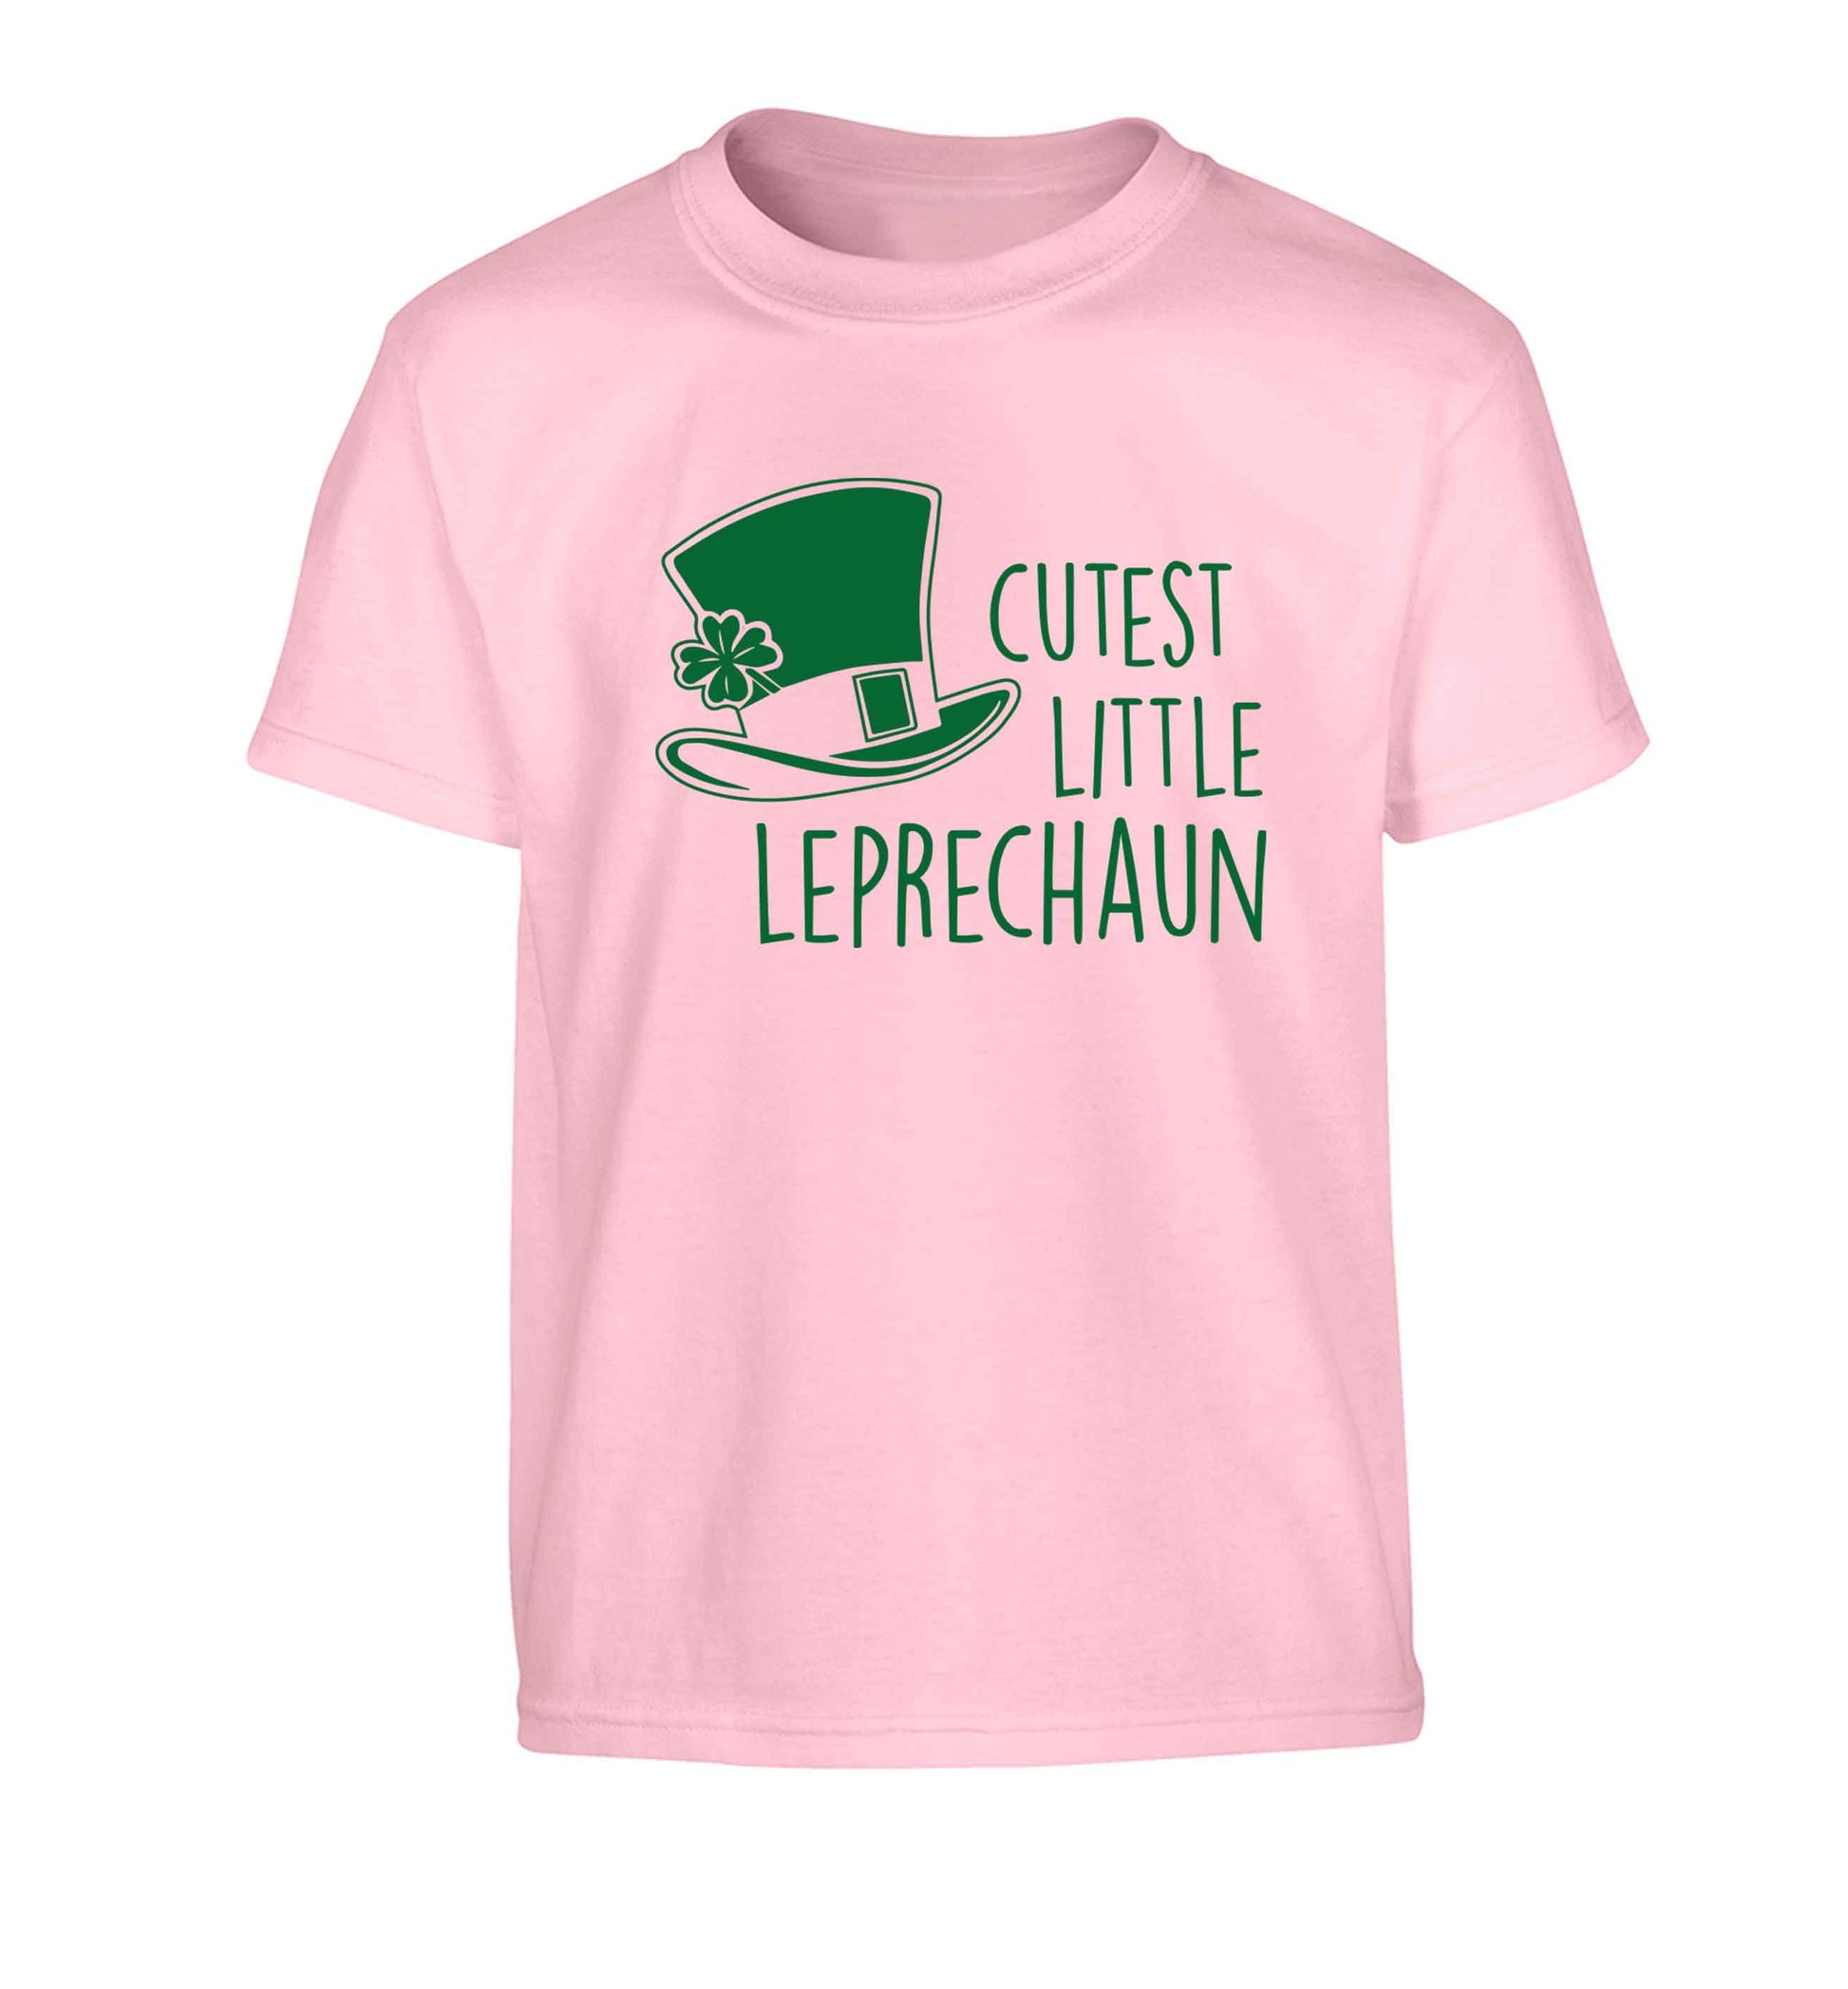 Cutest little leprechaun Children's light pink Tshirt 12-13 Years